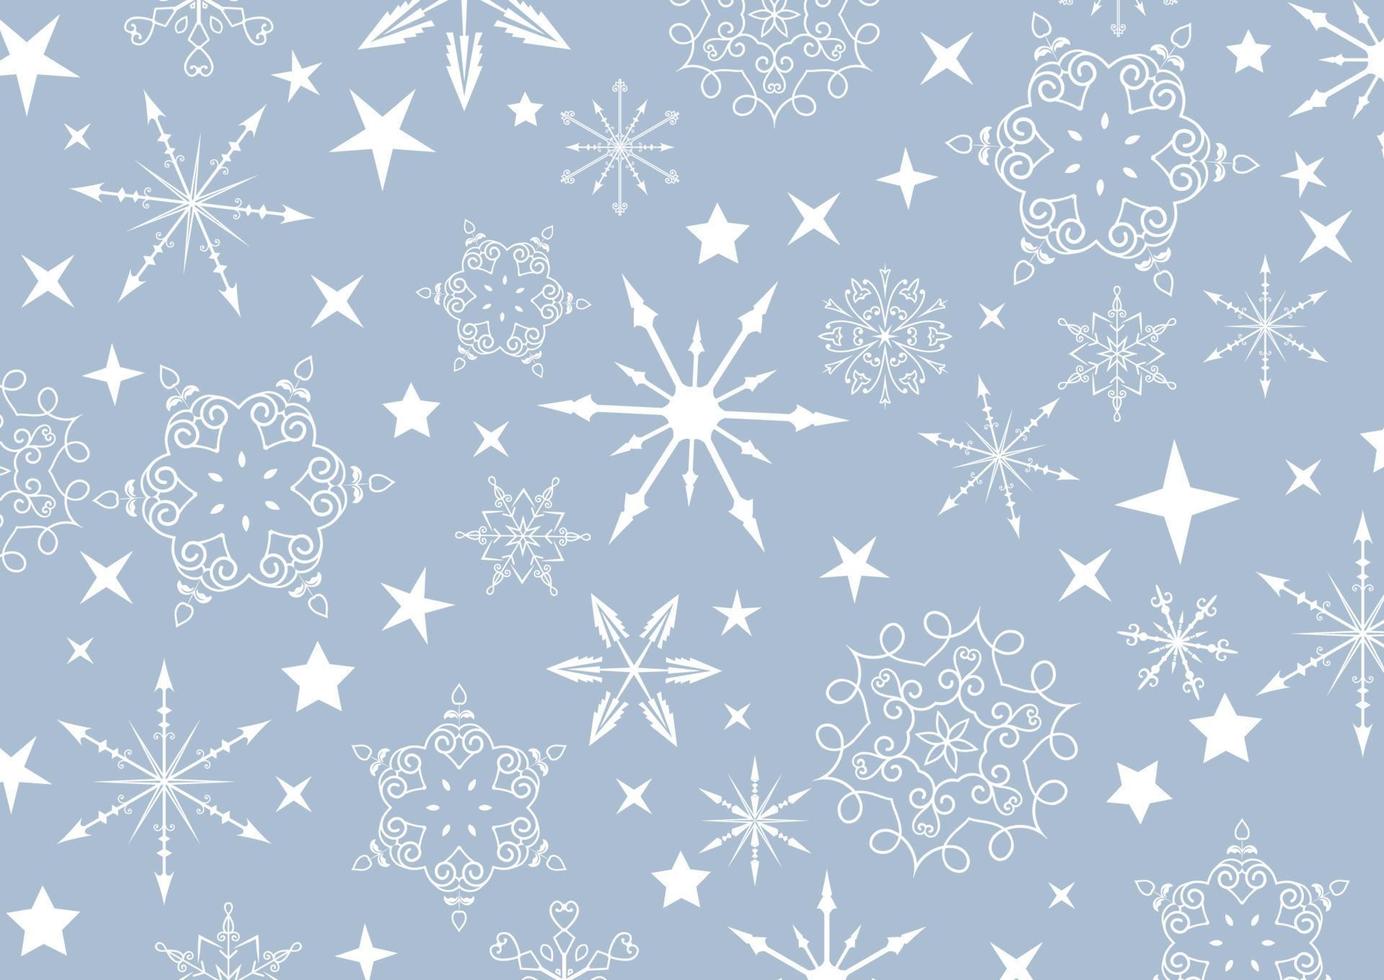 jul bakgrund med snöflingor och stjärnor vektor